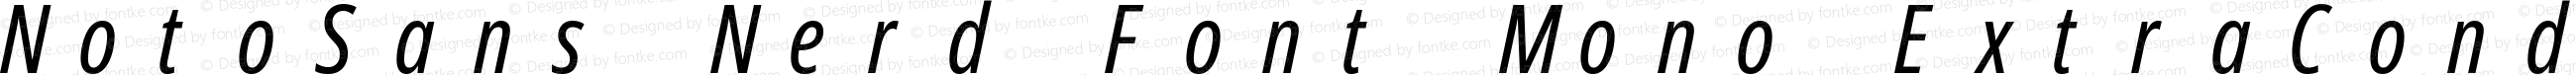 Noto Sans ExtraCondensed Italic Nerd Font Complete Mono